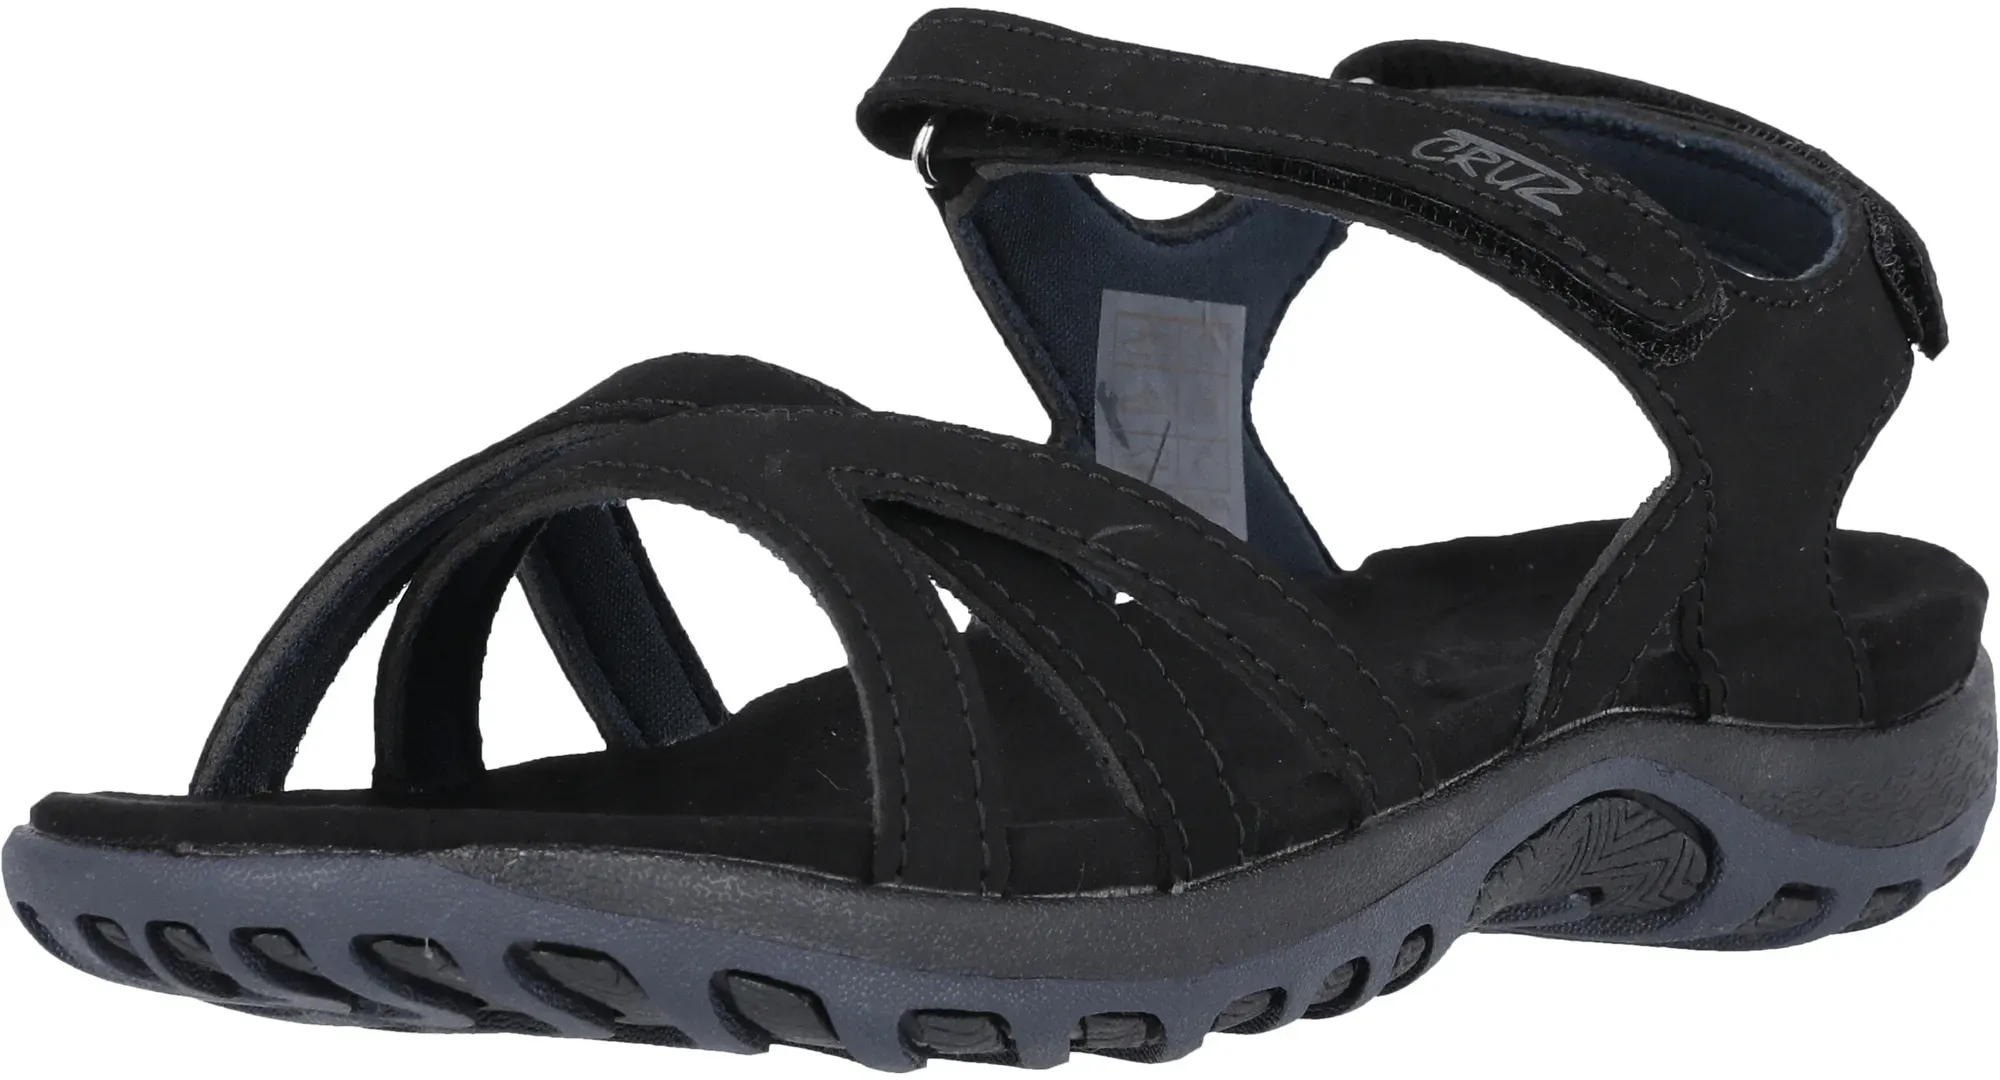 Sandale CRUZ "Highcliff" Gr. 39, schwarz Damen Schuhe Sandalen mit angenehmer Passform